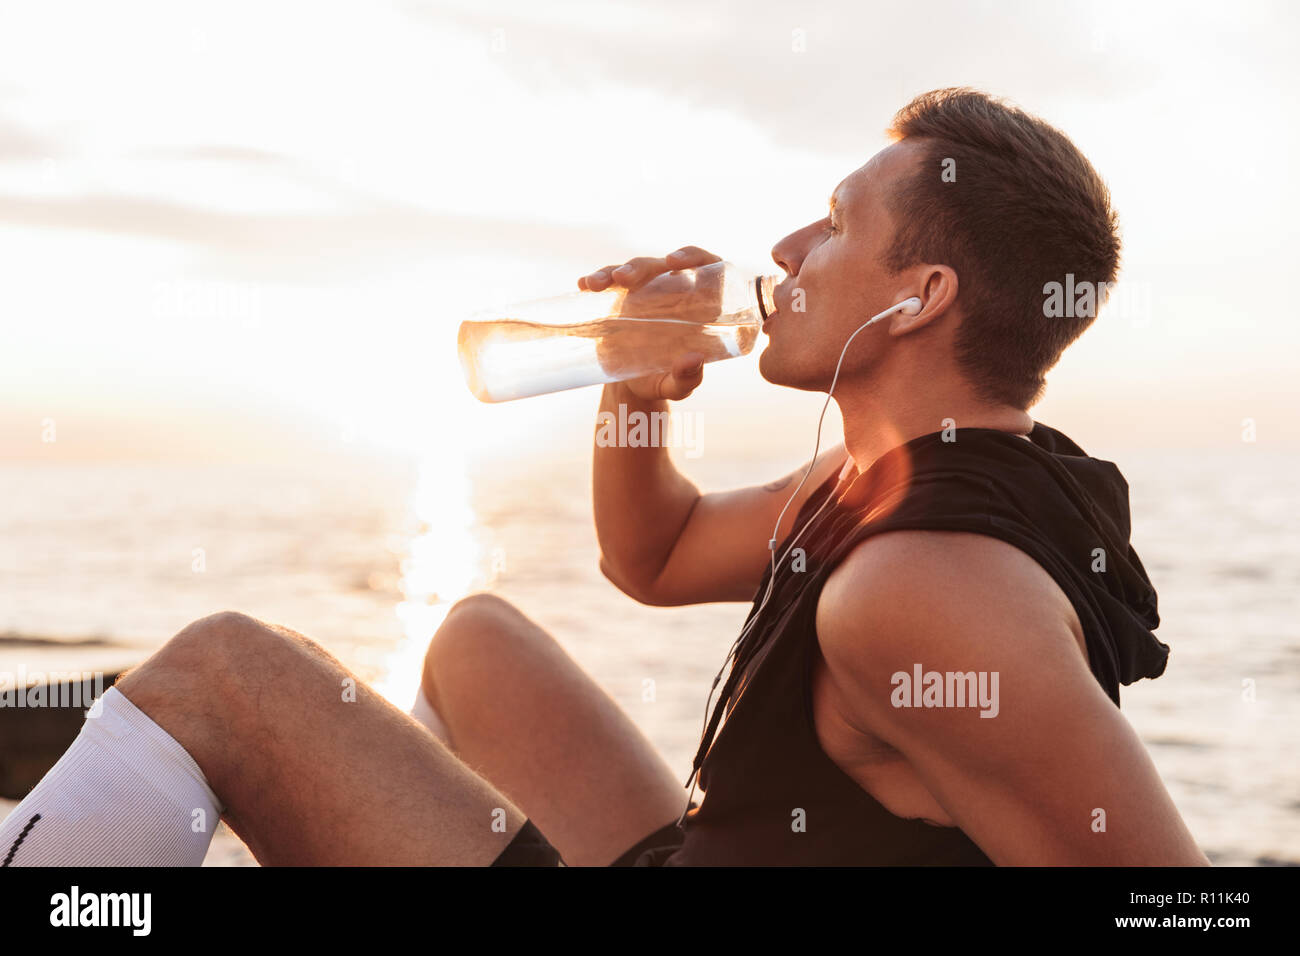 Bild von Stattlichen starken jungen Sportler im Freien am Strand Musik hören mit Kopfhörern Trinkwasser. Stockfoto